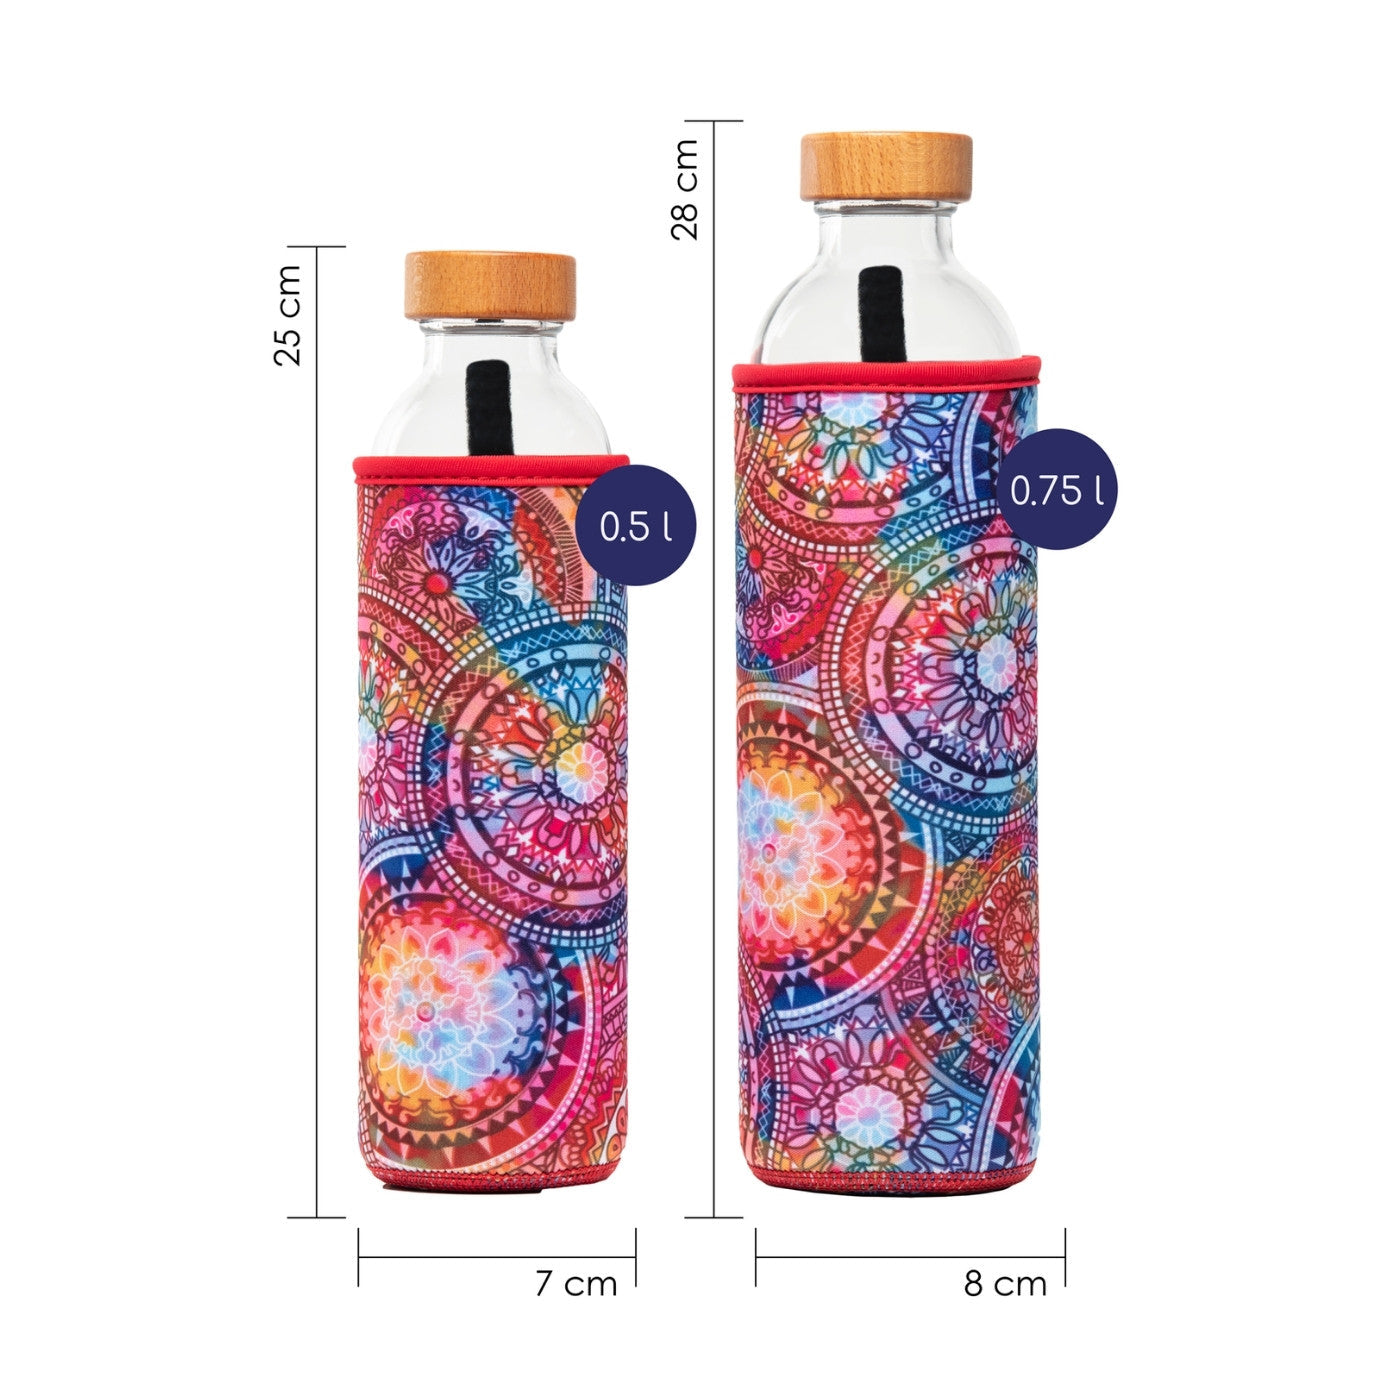 dimensionen der wiederverwendbaren flaska glasflasche mit roter neopren schutzhülle mit mandalas design